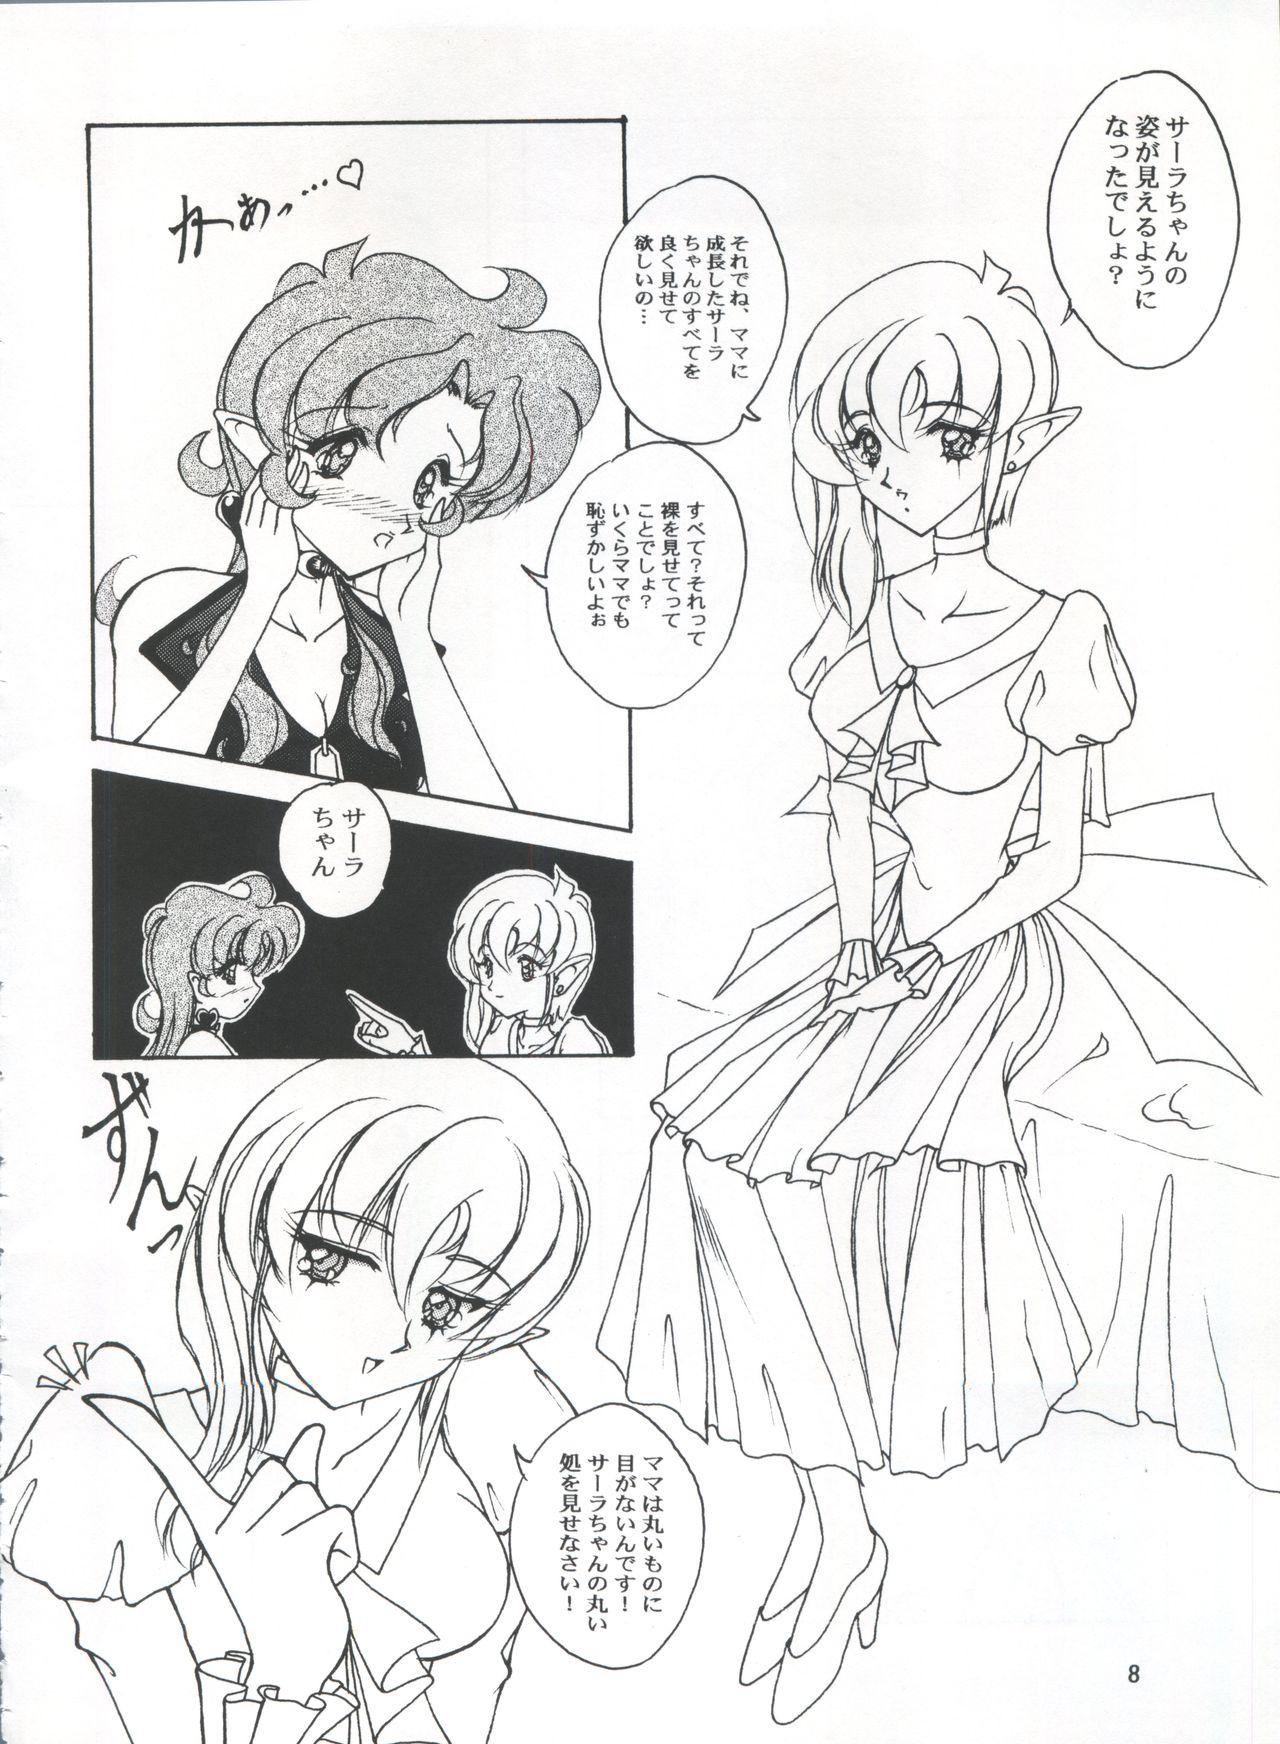 Old Man LESBOS MILLENNIUM - Neon genesis evangelion Sailor moon Tenshi ni narumon Bigass - Page 8